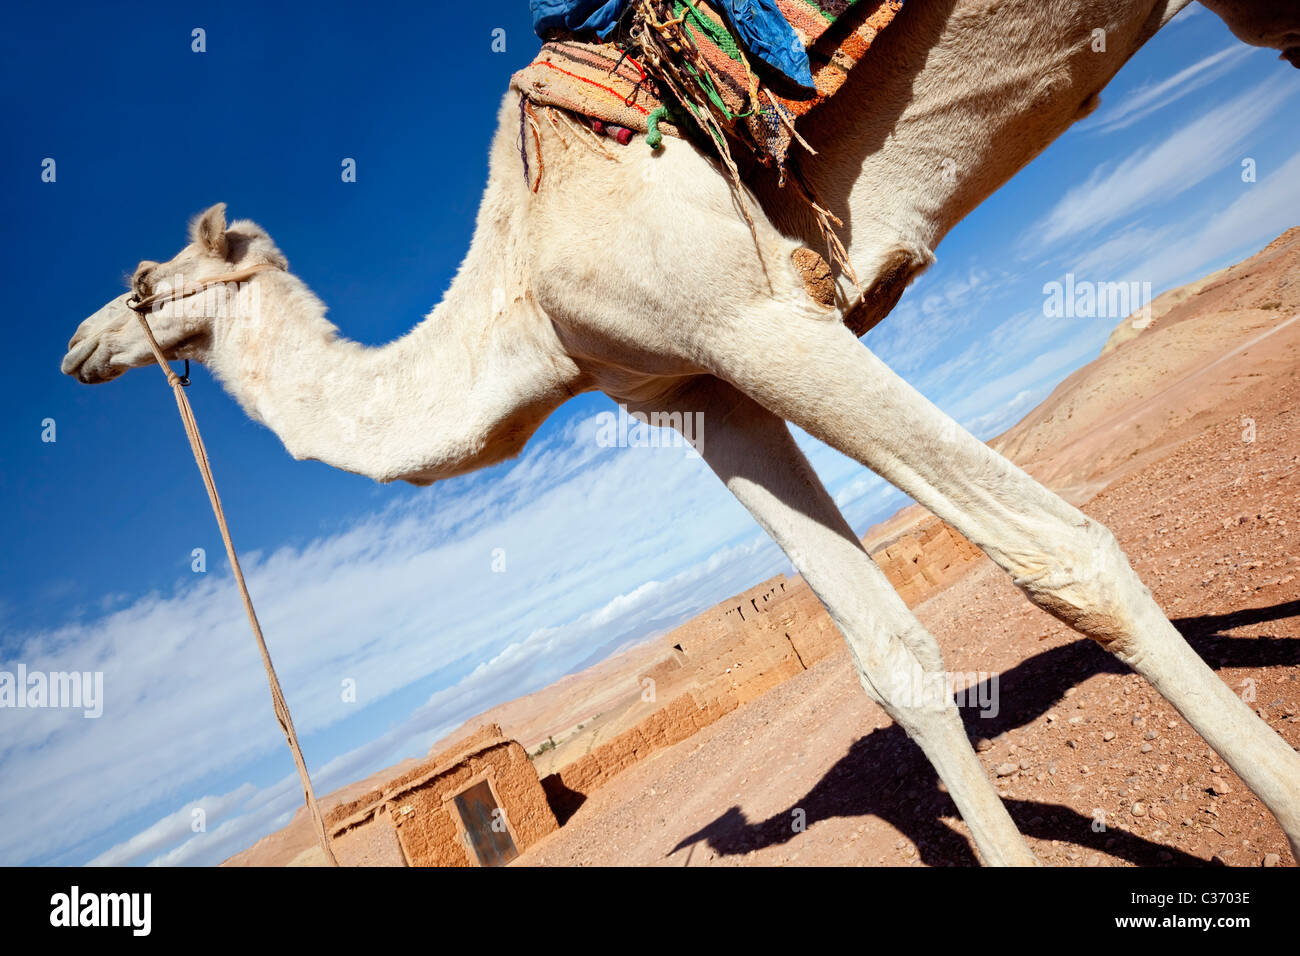 White camel against blue sky. Stock Photo